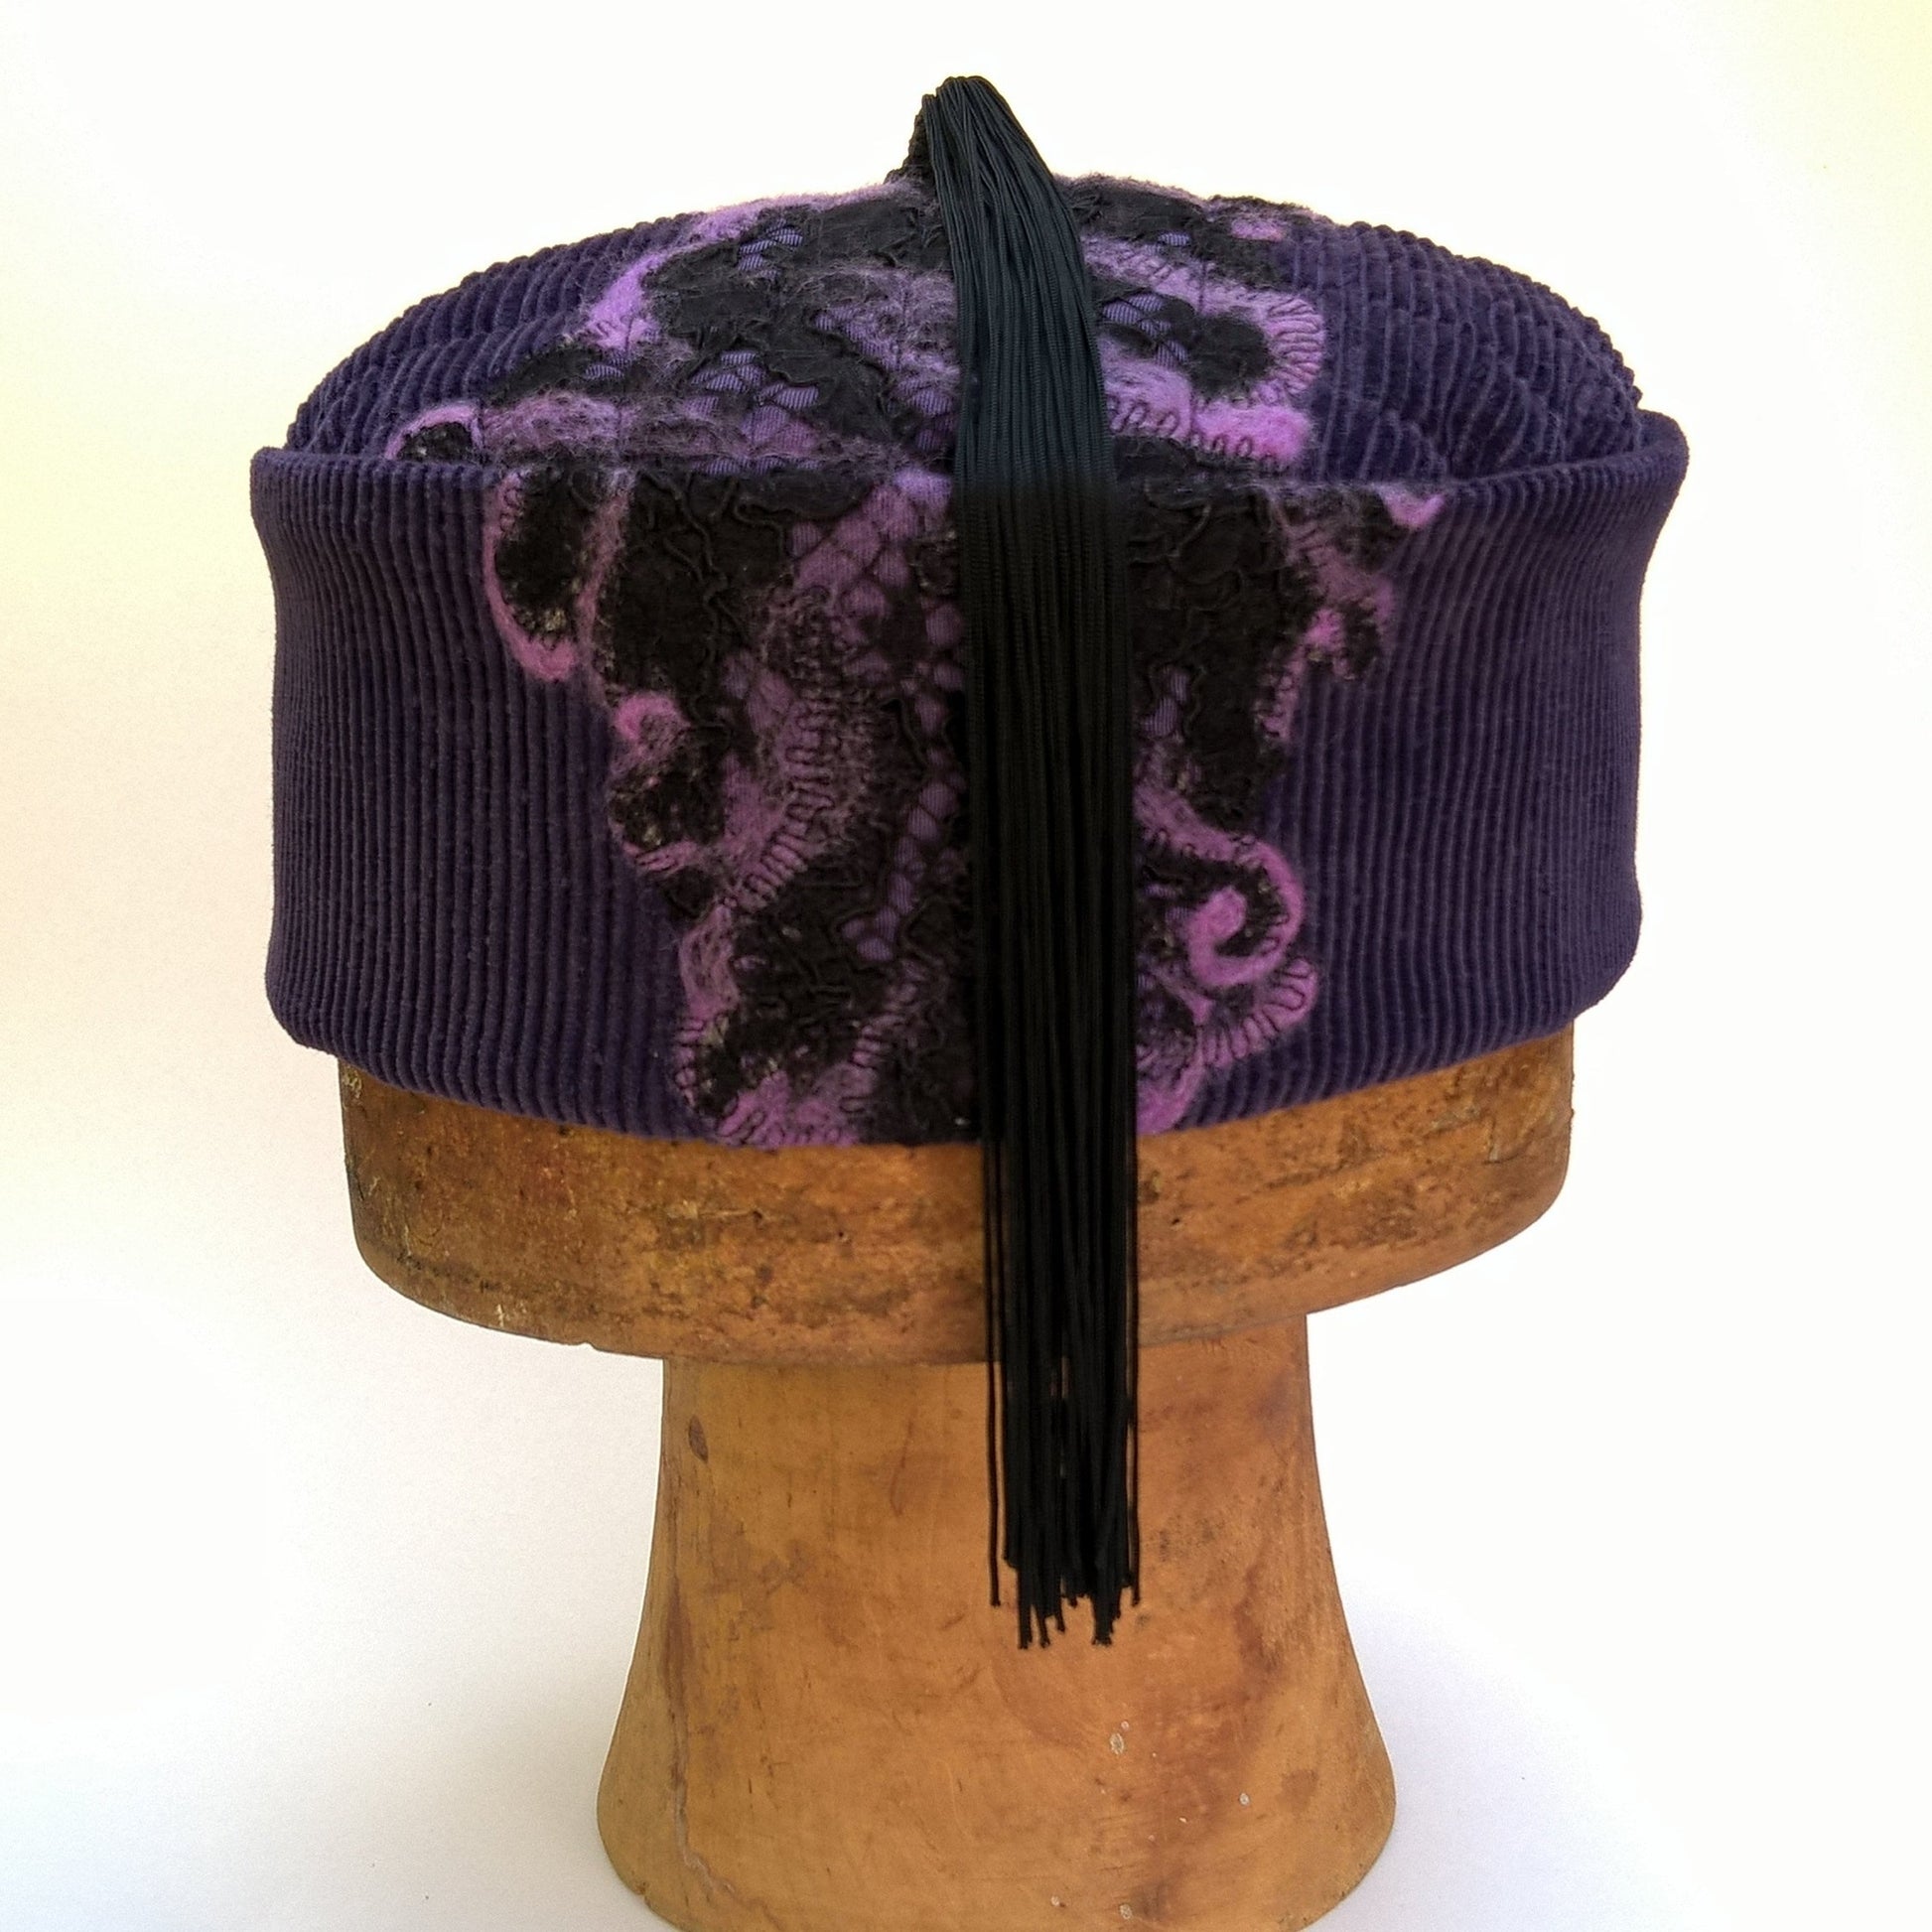 Bohemian smoking cap with nuno felting on purple corduroy